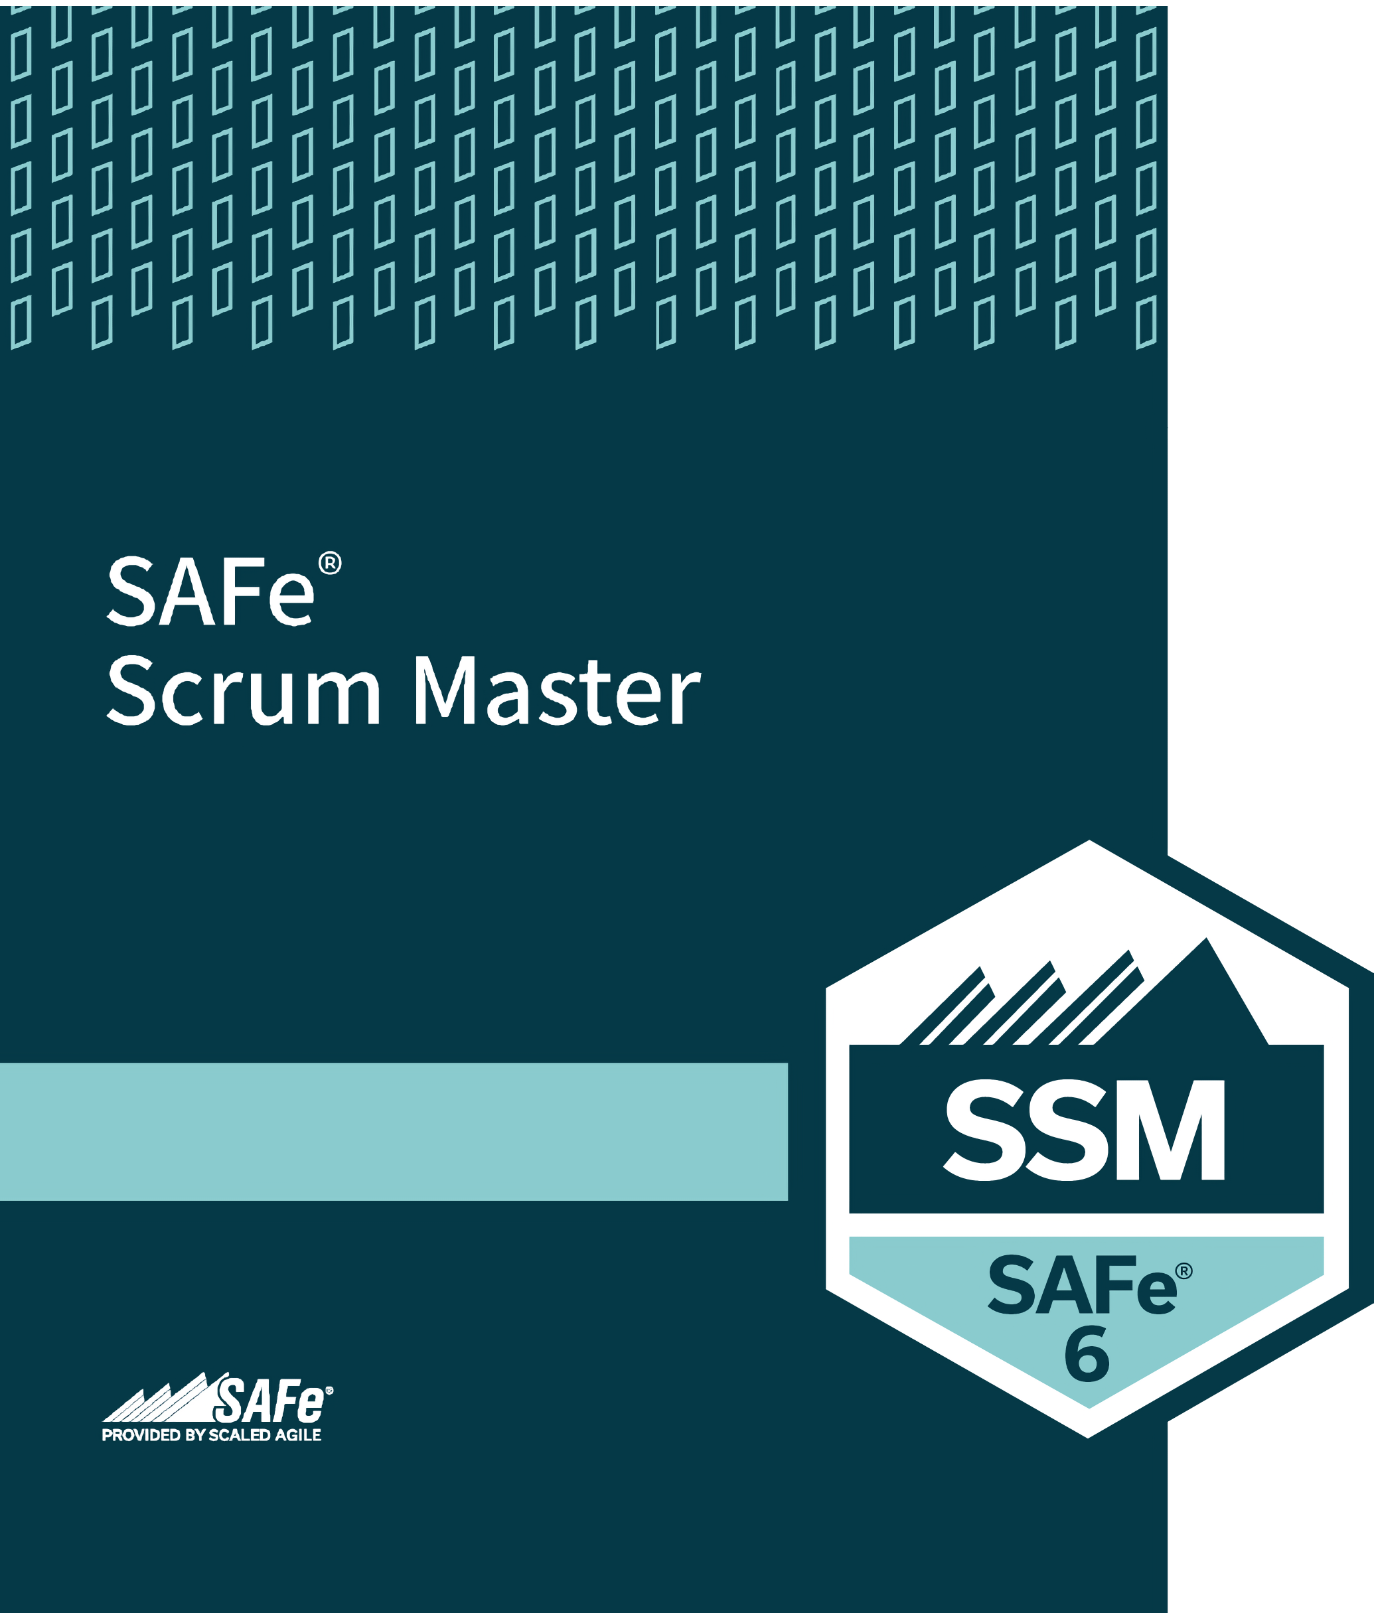 SAFe® Scrum Master

